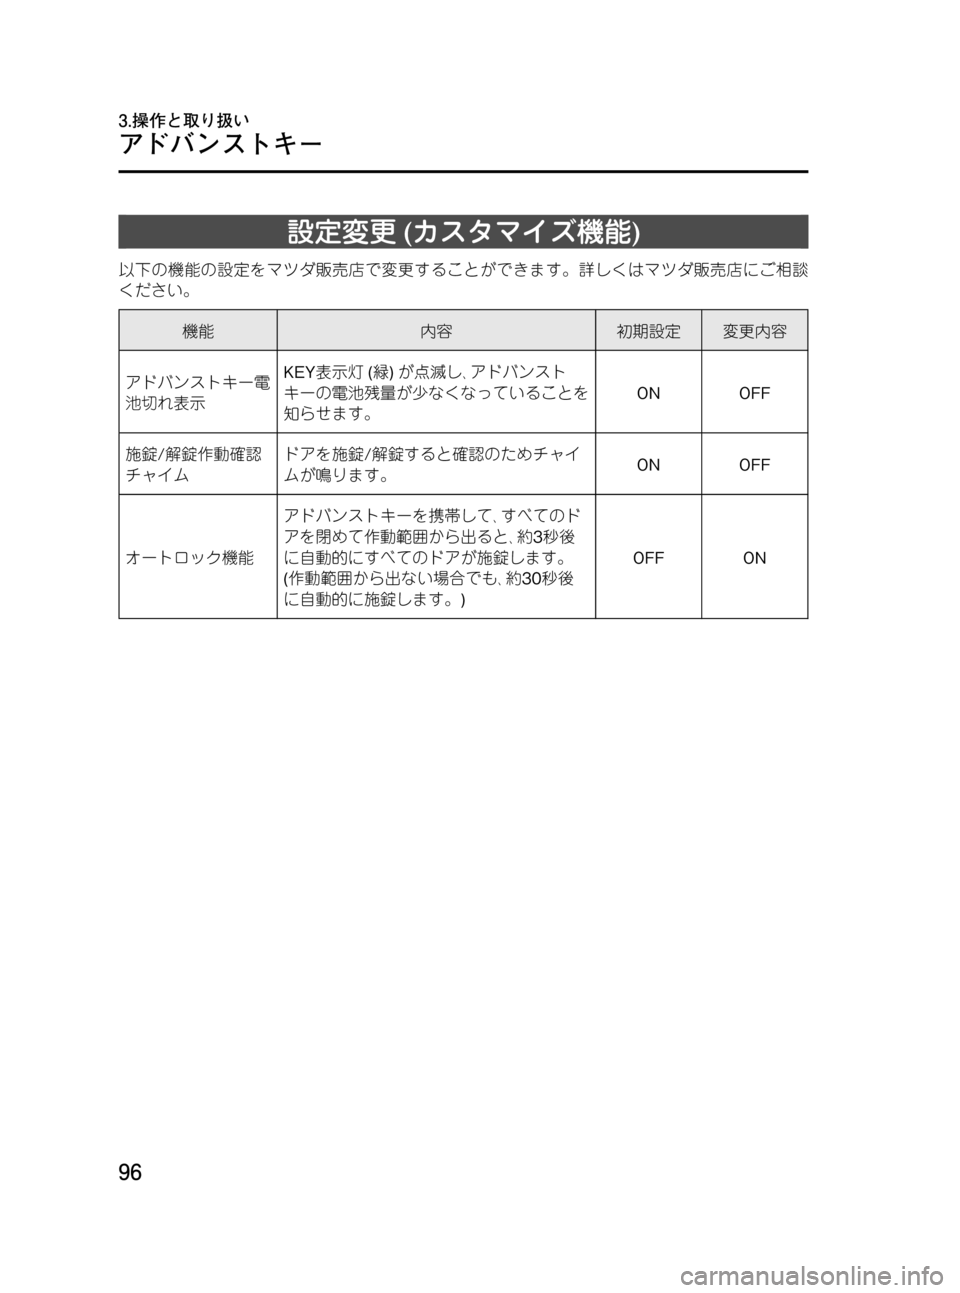 MAZDA MODEL RX 8 2008  取扱説明書 (in Japanese) Black plate (96,1)
設定変更(カスタマイズ機能)
以下の機能の設定をマツダ販売店で変更することができます。詳しくはマツダ販売店にご相談
ください。